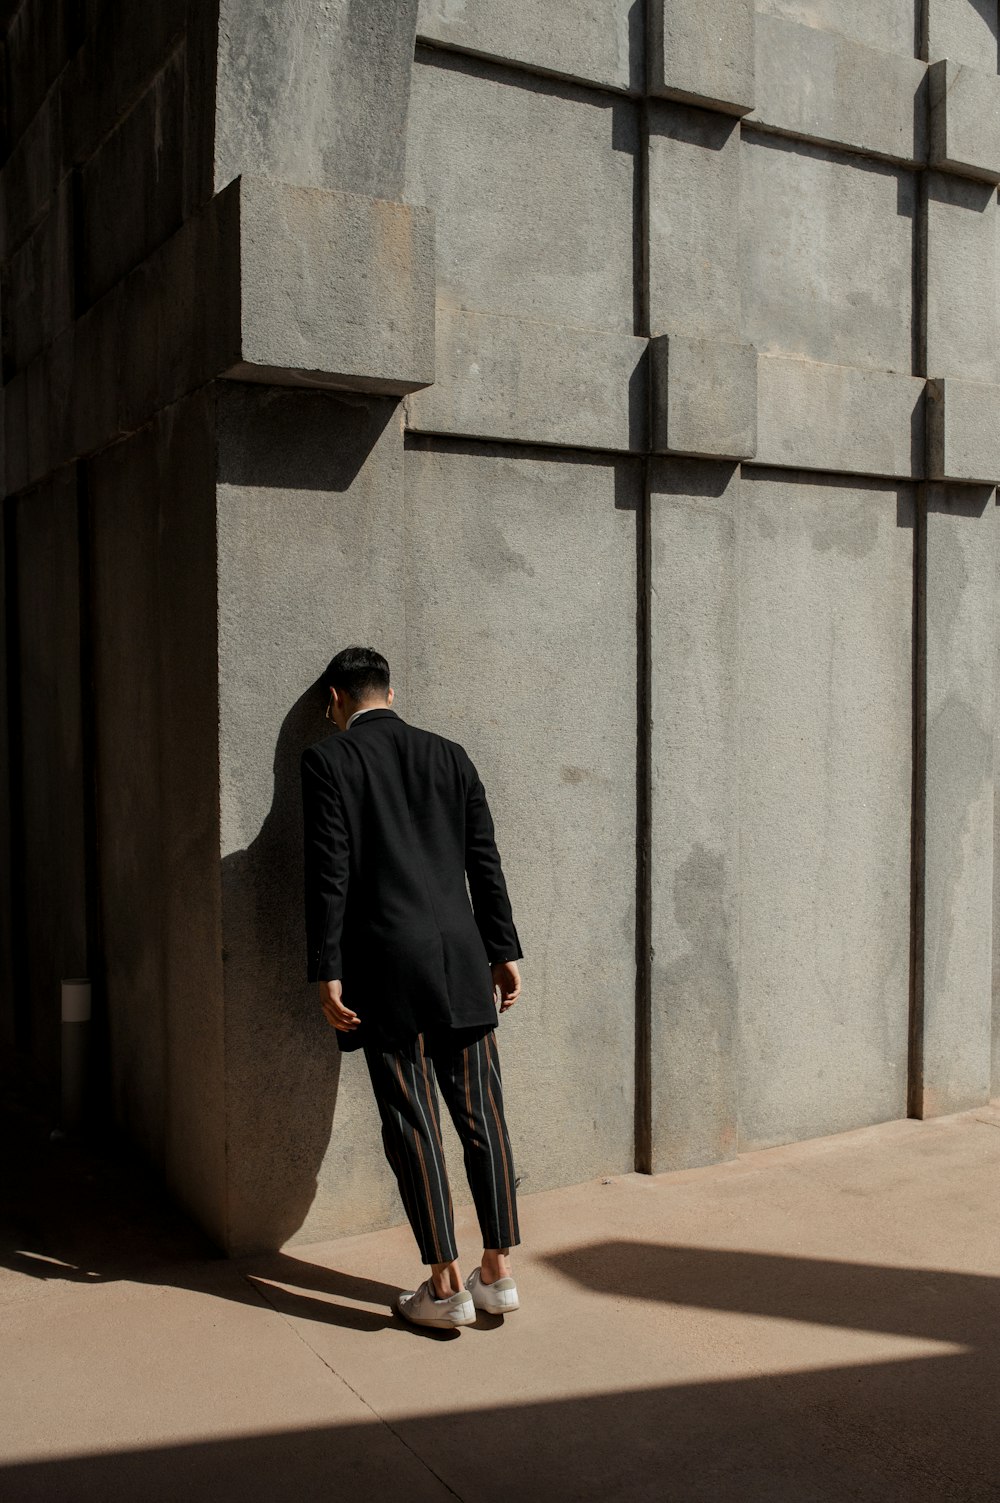 Mann im schwarzen Anzug schlägt mit dem Kopf gegen die Wand